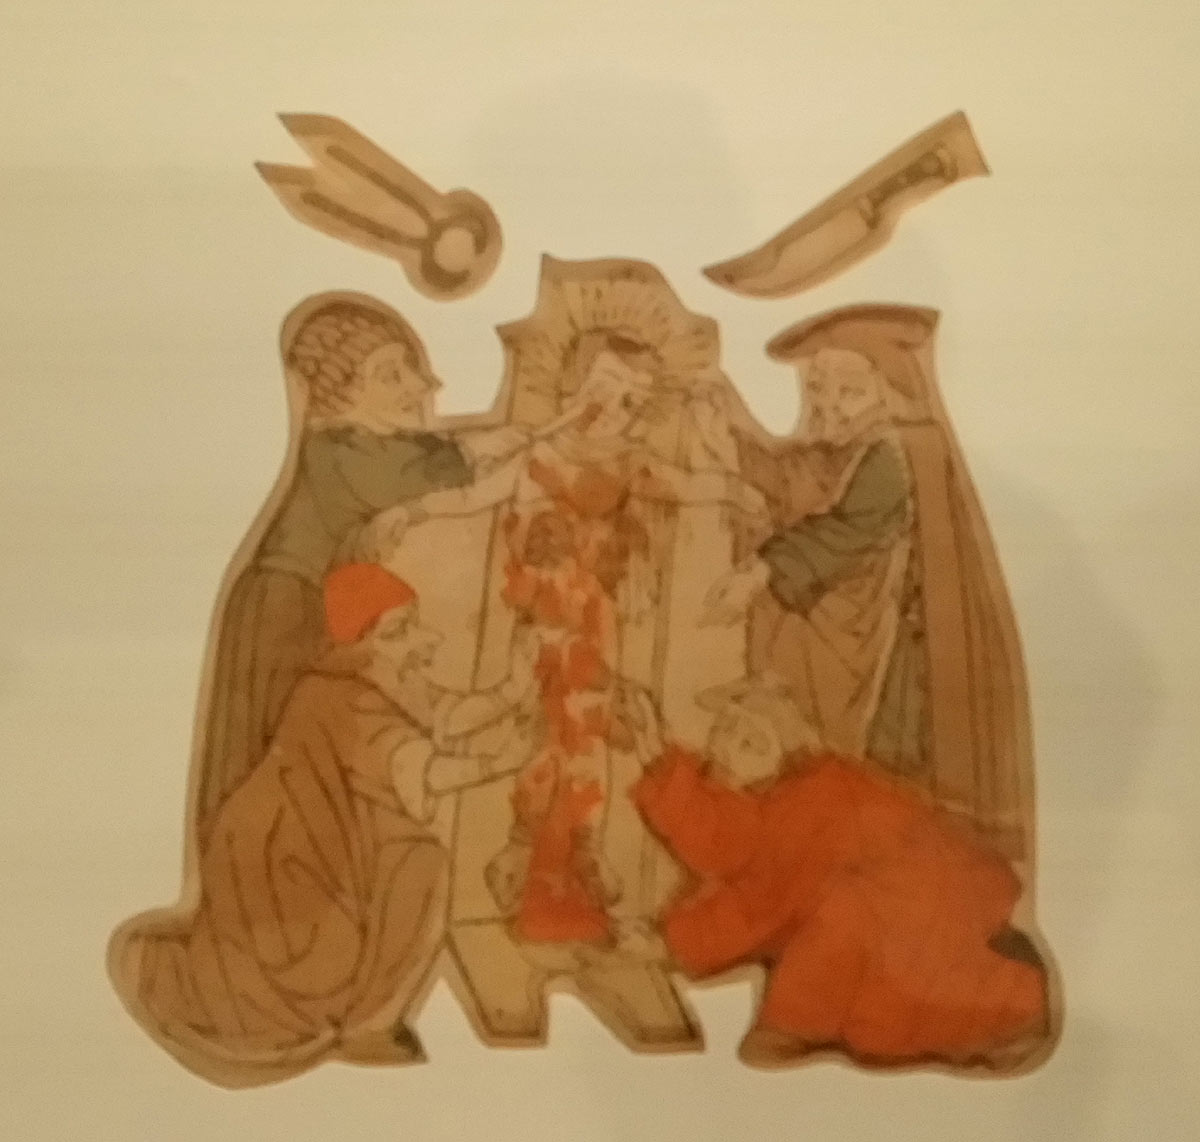 Xilografo dell'Italia nord orientale, Martirio di Simonino da Trento (1475-1485 circa; xilografia colorata, 125 x 145 mm; Ravenna, Biblioteca Classense, inv. n. 22)
